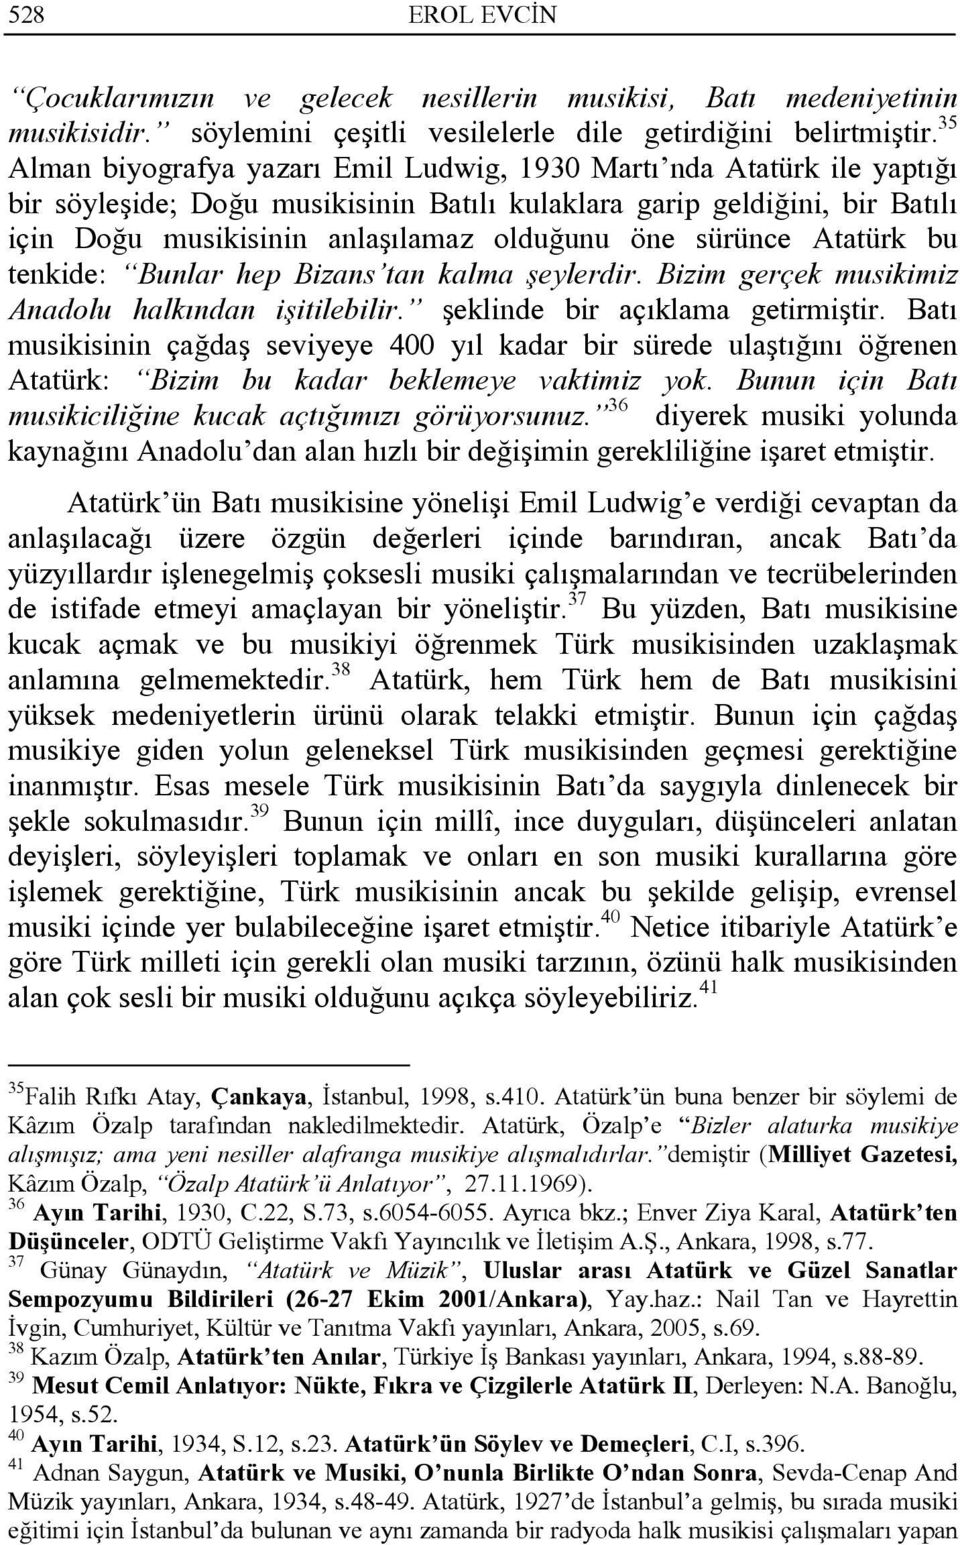 sürünce Atatürk bu tenkide: Bunlar hep Bizans tan kalma şeylerdir. Bizim gerçek musikimiz Anadolu halkından işitilebilir. şeklinde bir açıklama getirmiştir.